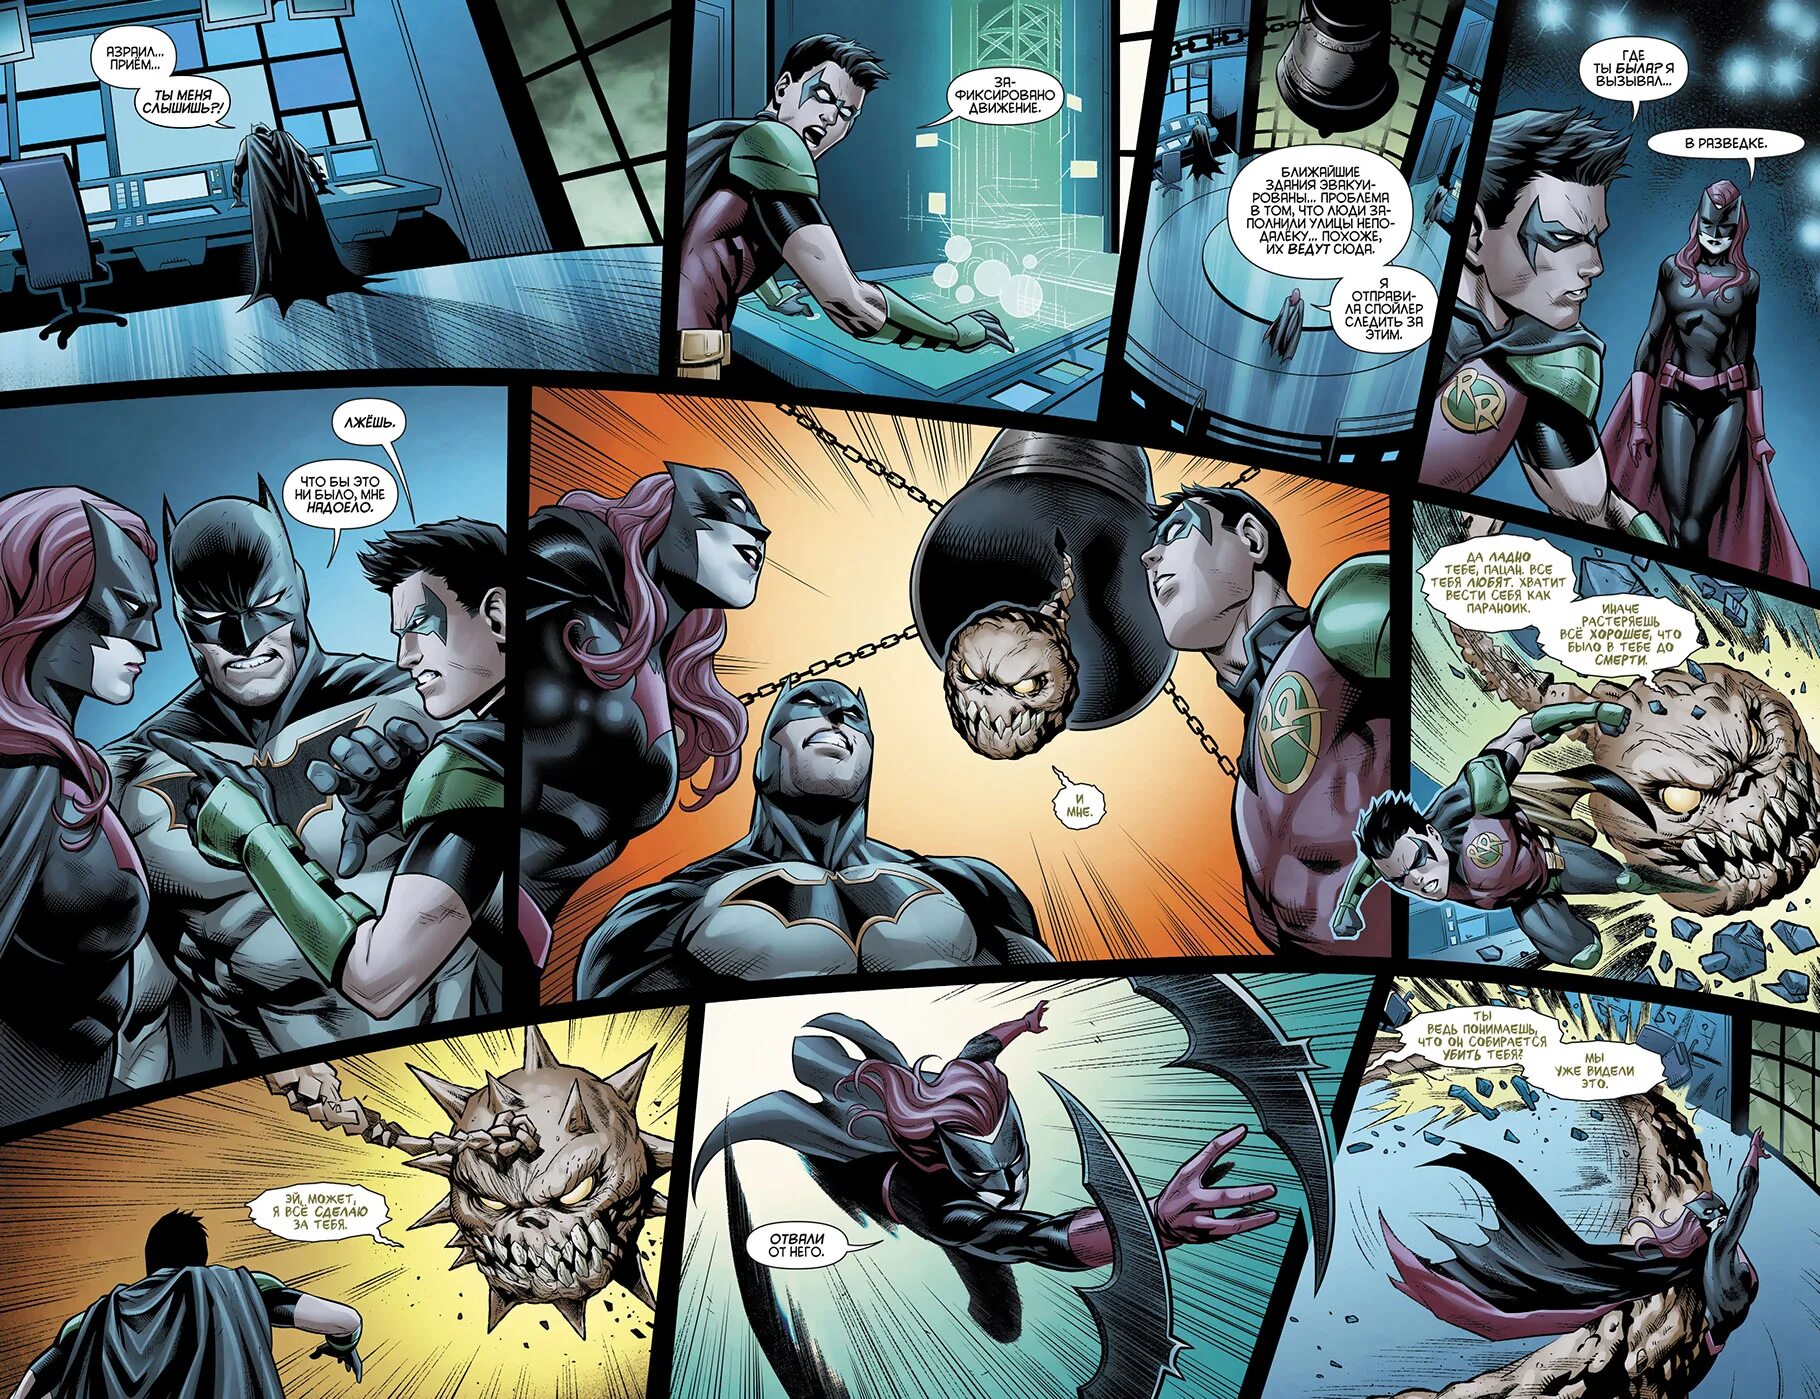 Читать комикс 10. Страница из комикса. Комиксы Бэтмен страницы. Комиксы о супергероях. Страницы комиксов про супергероев.